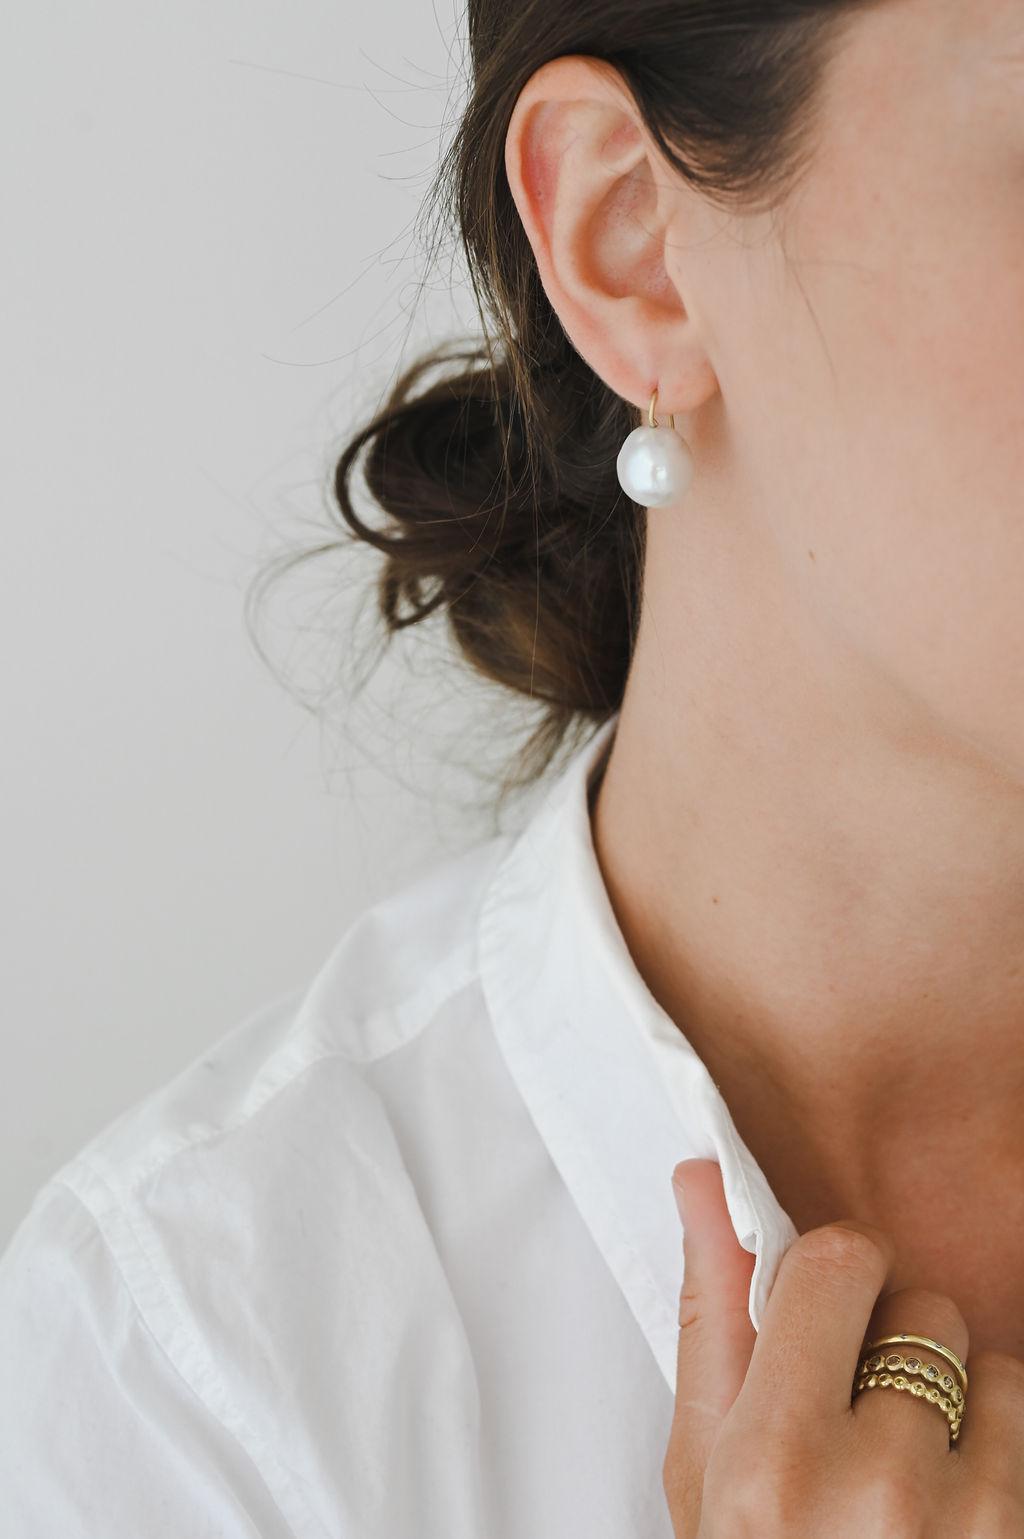 Classiques, intemporelles et tout simplement chics, les boucles d'oreilles perles baroques en or 18 carats de Faye Kim présentent une finition mate et des fils d'oreille en or 18 carats.  Chaque paire de boucles d'oreilles en perles varie légèrement